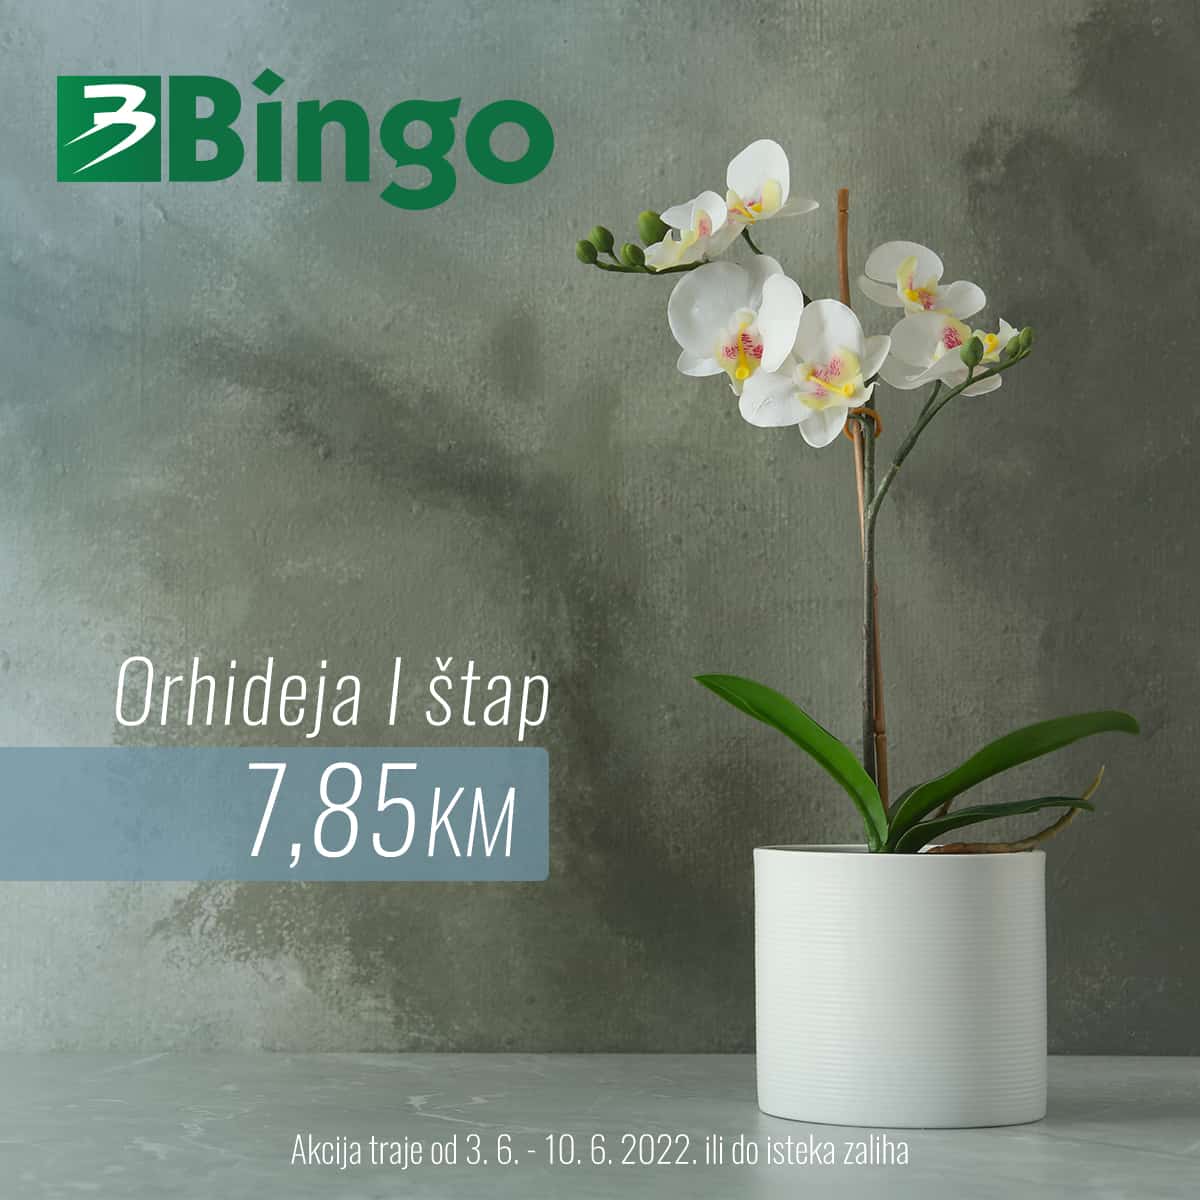 Uljepšajte vaš dom ili razveselite dragu osobu orhidejama iz naše ponude. U odabranim Bingo trgovinama pronađite orhideje po fantastičnoj cijeni od 7,85 KM.